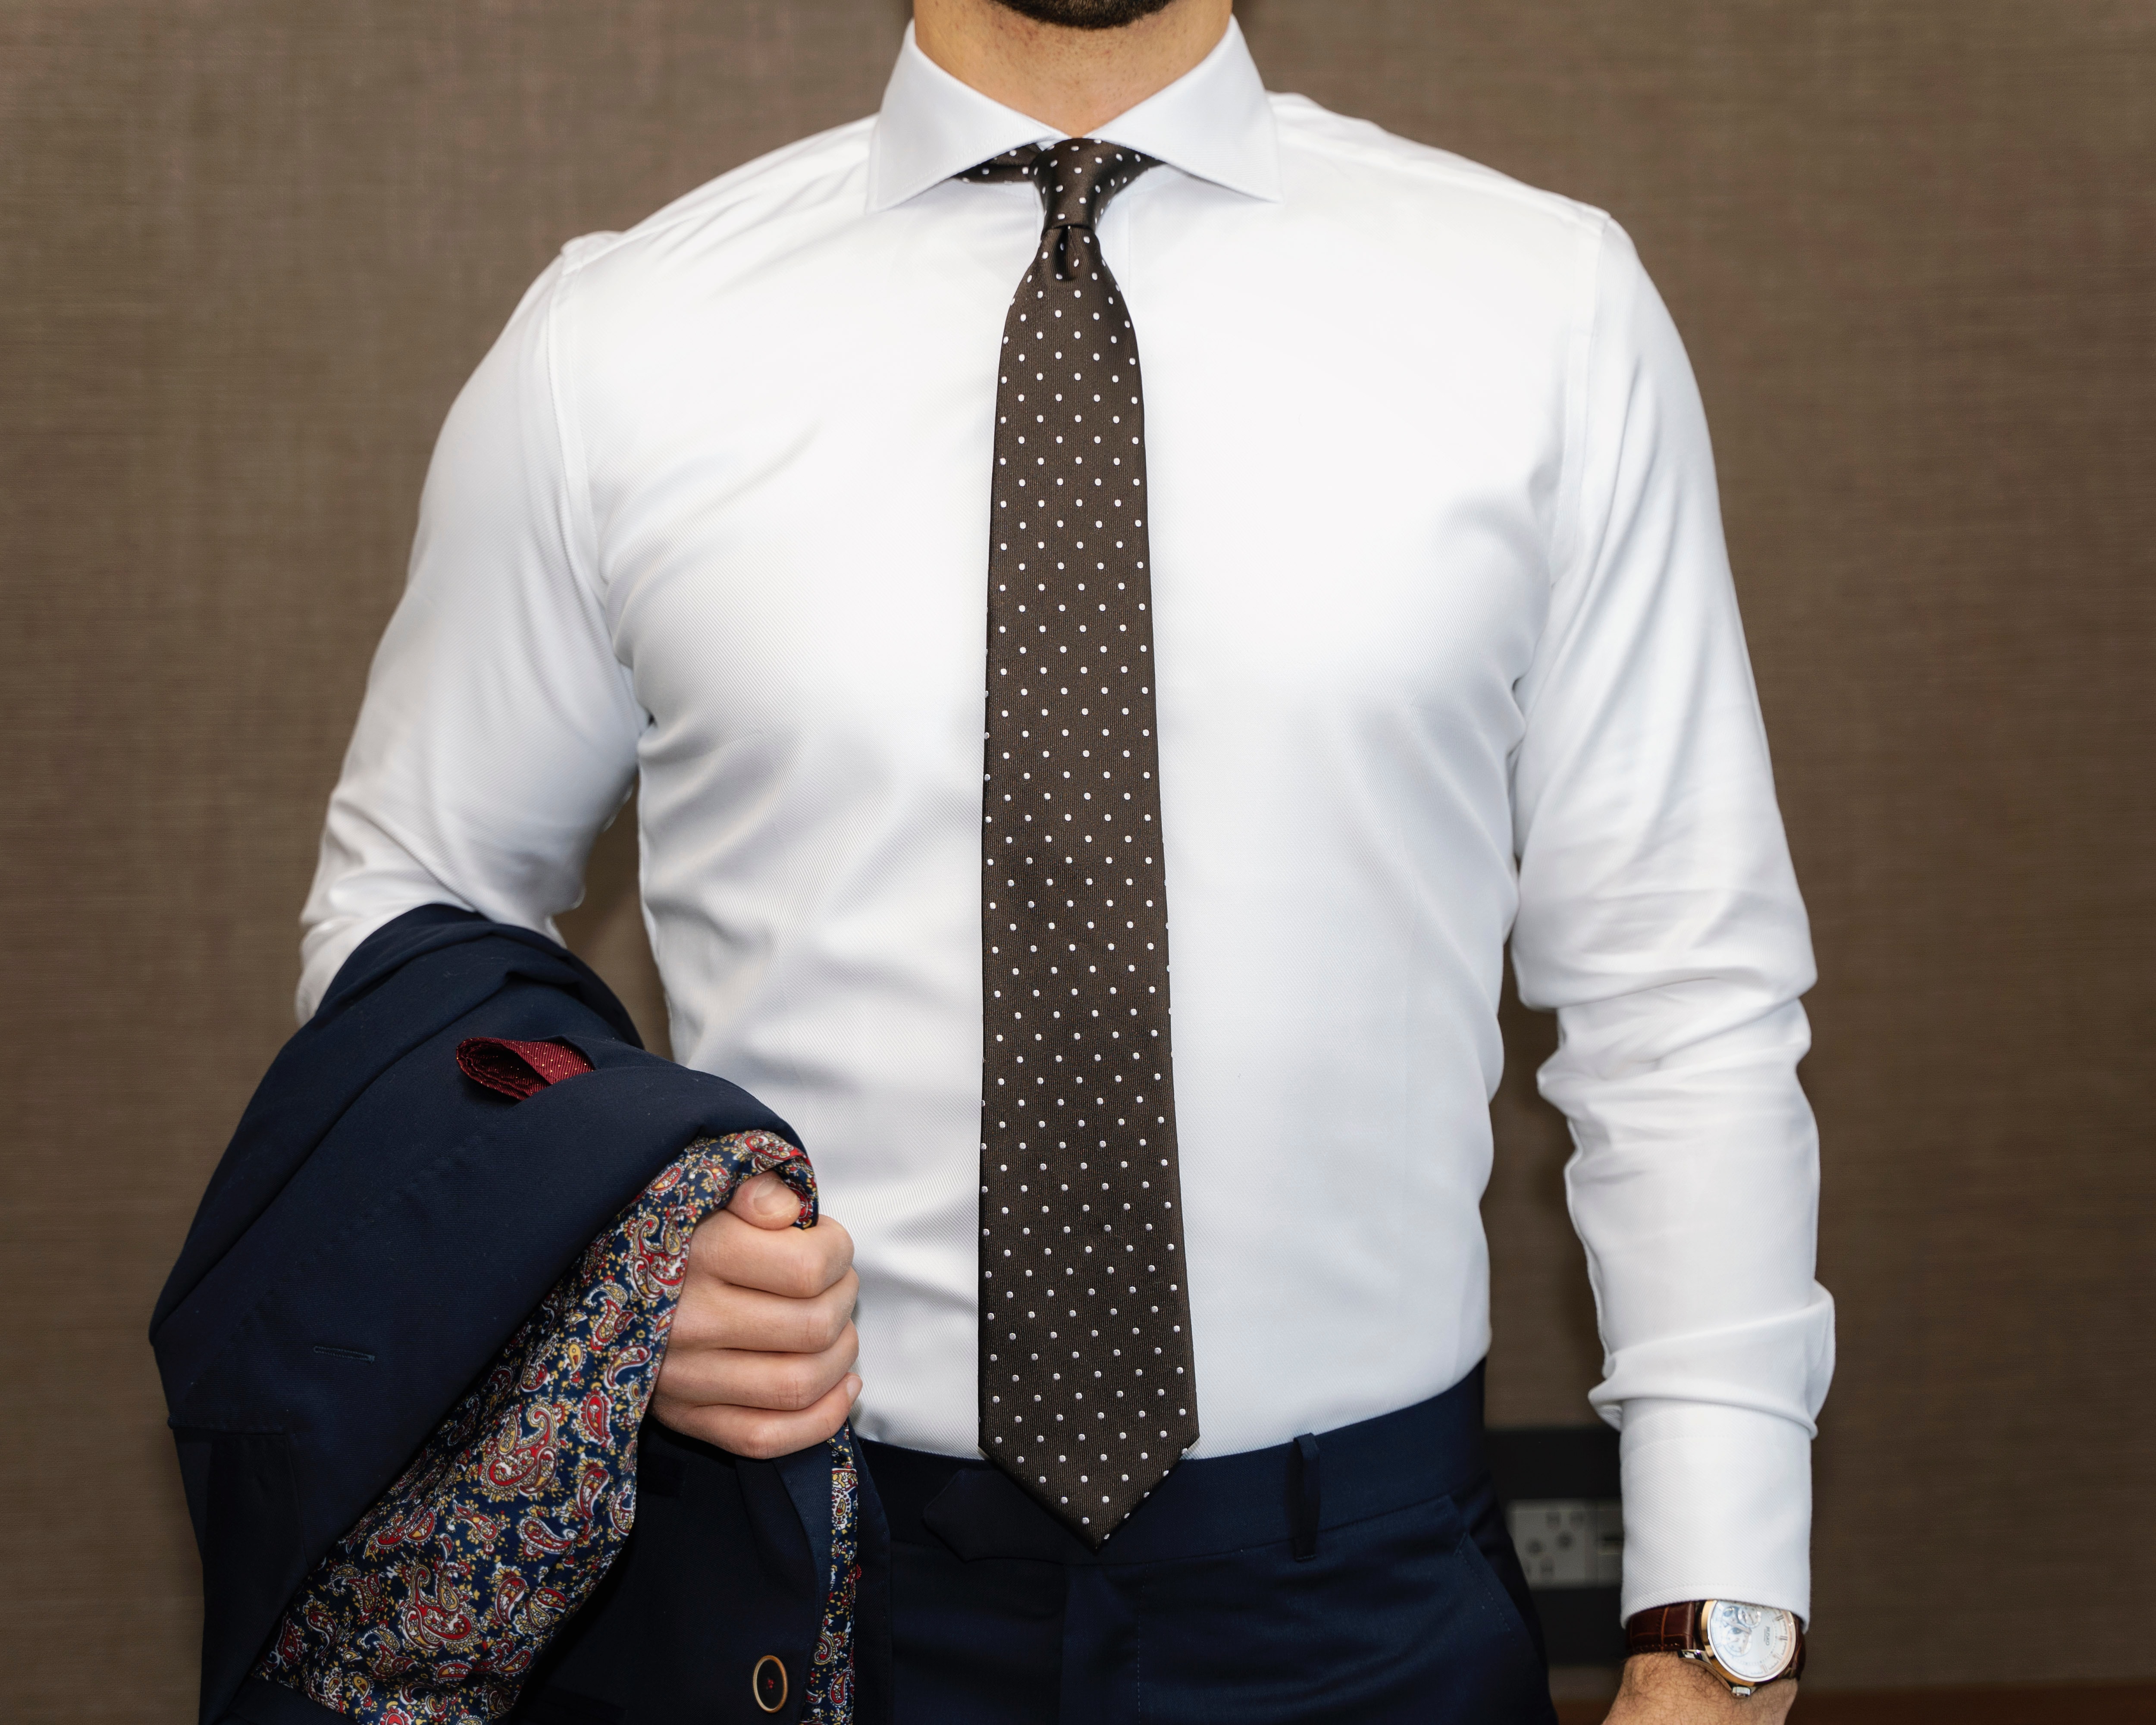 Pod oblek volte světlé košile s kravatou nebo motýlkem